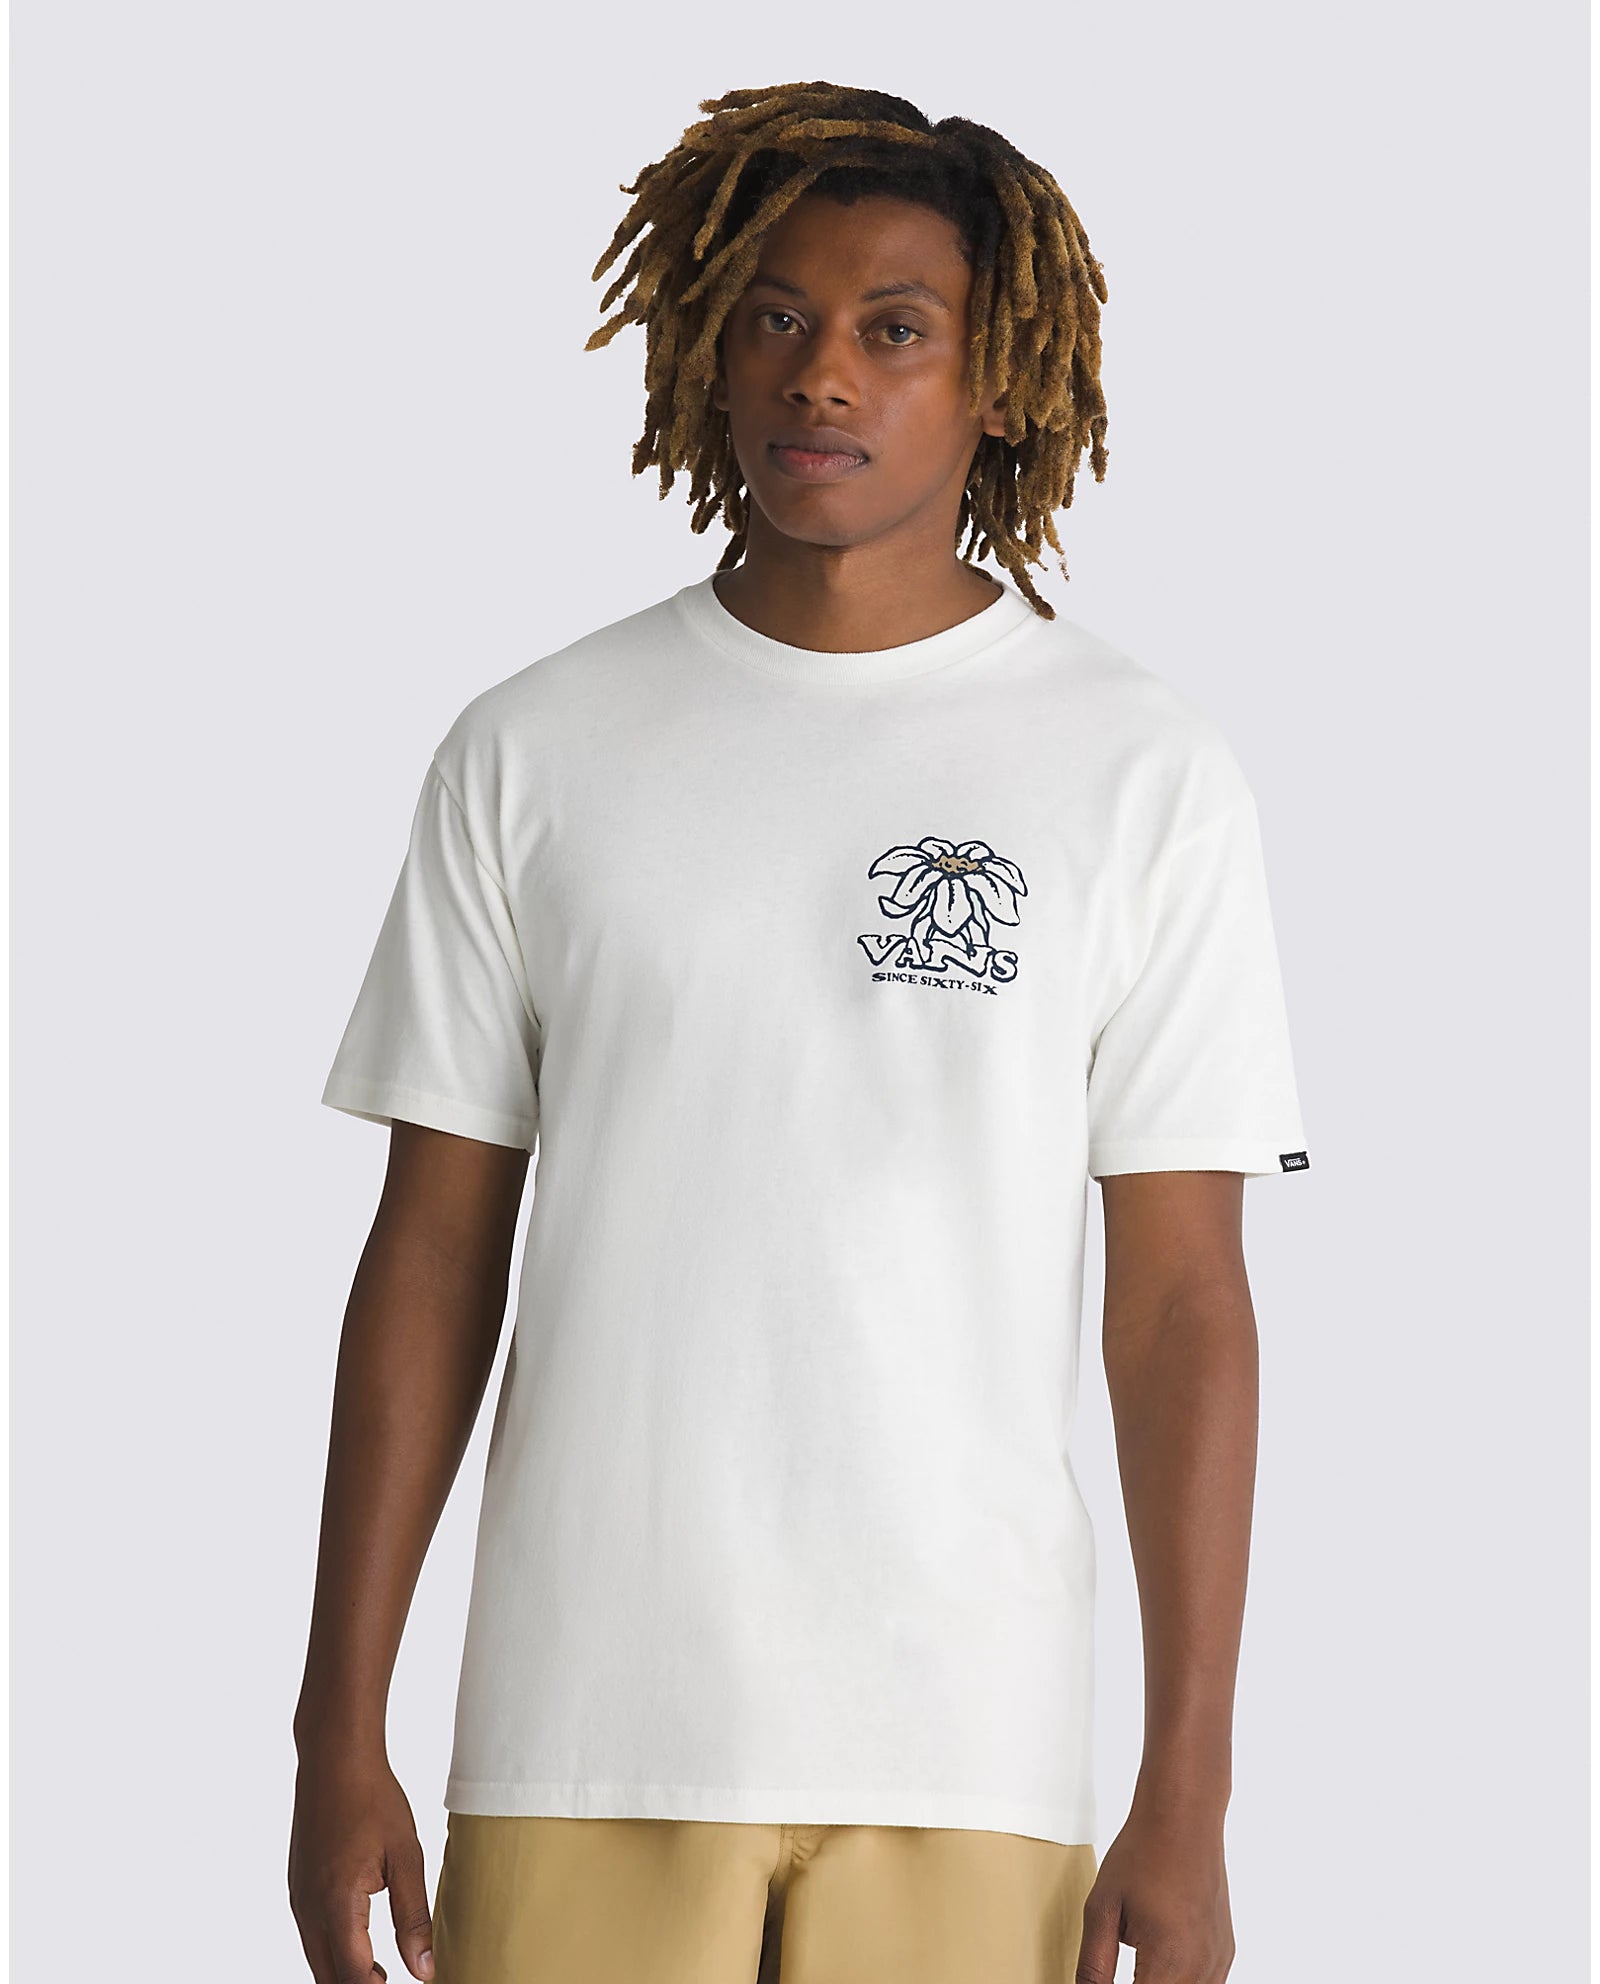 VANS What's Inside SS Tee-Shirt - Marshmallow Mens T Shirt